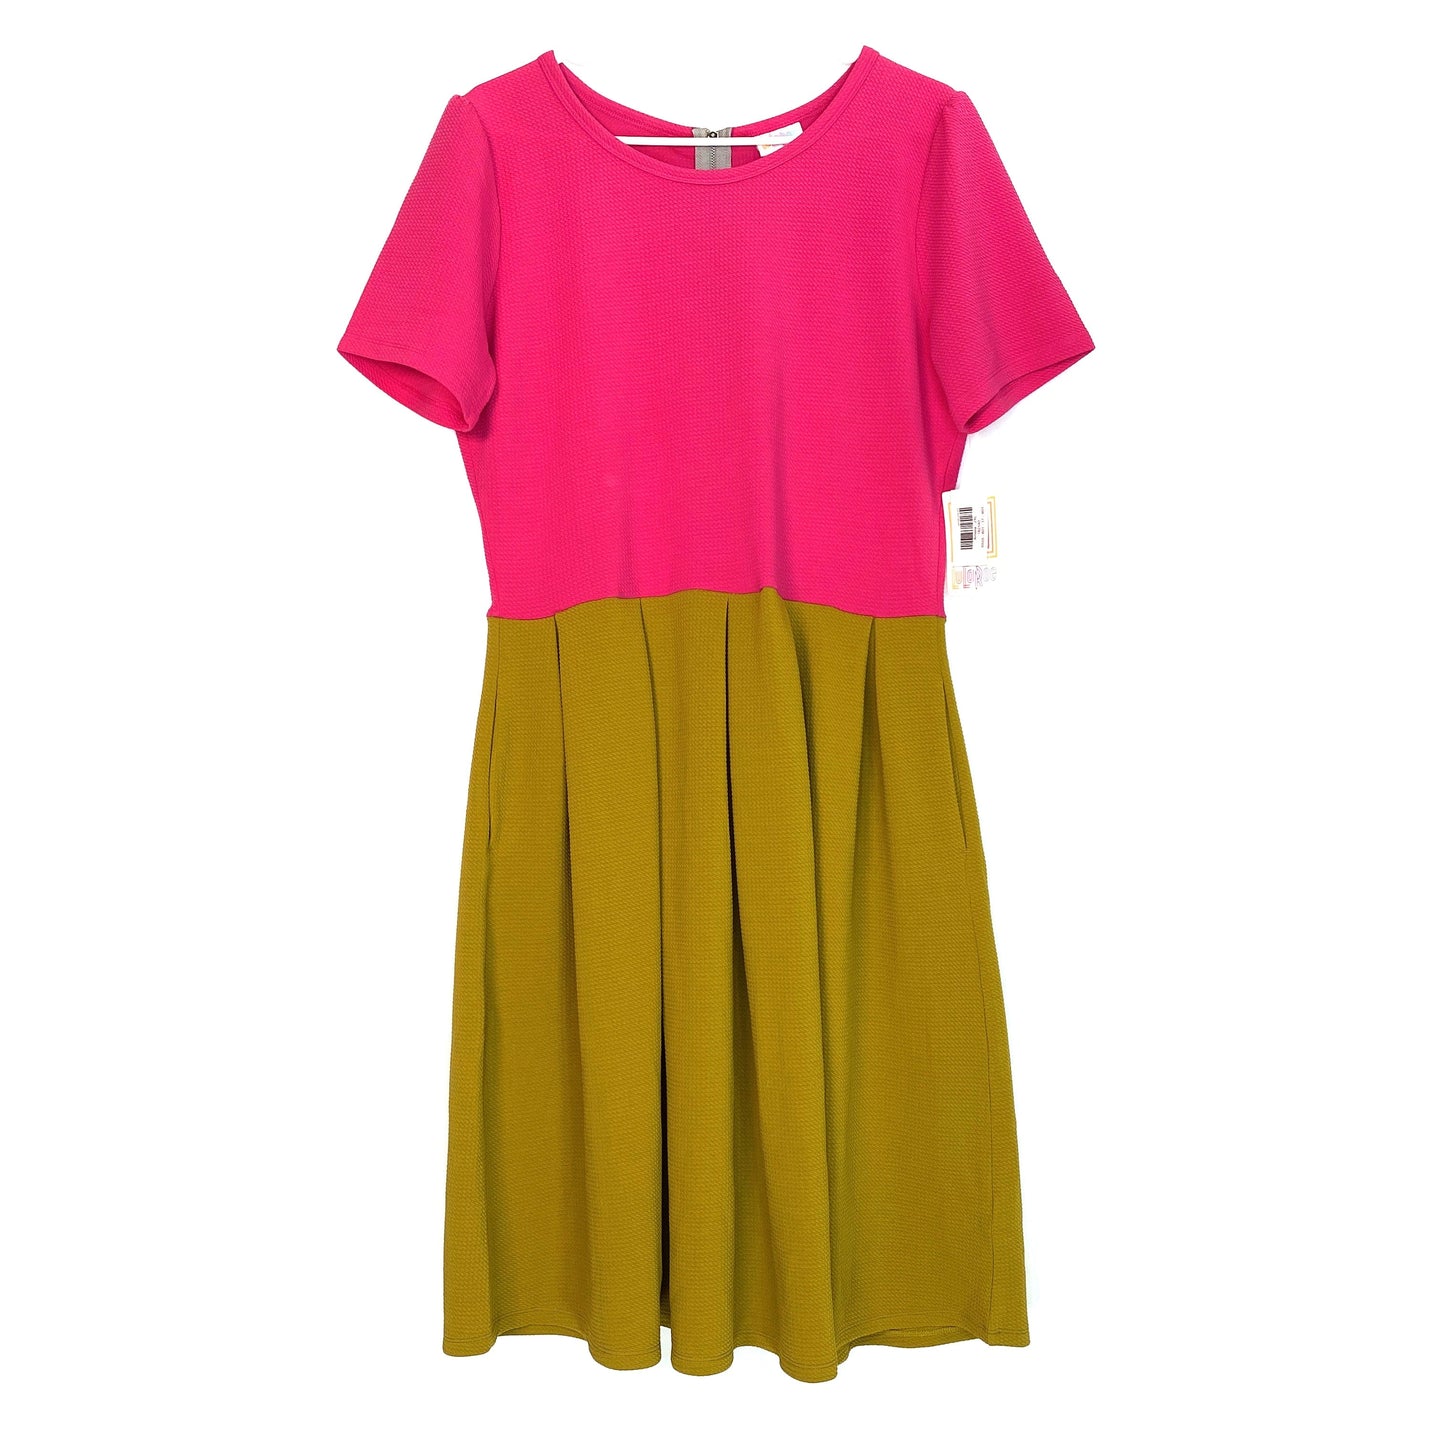 LuLaRoe Womens Size 2XL Amelia Pink & Mustard Yellow Colorblock UNICORN Dress NWT